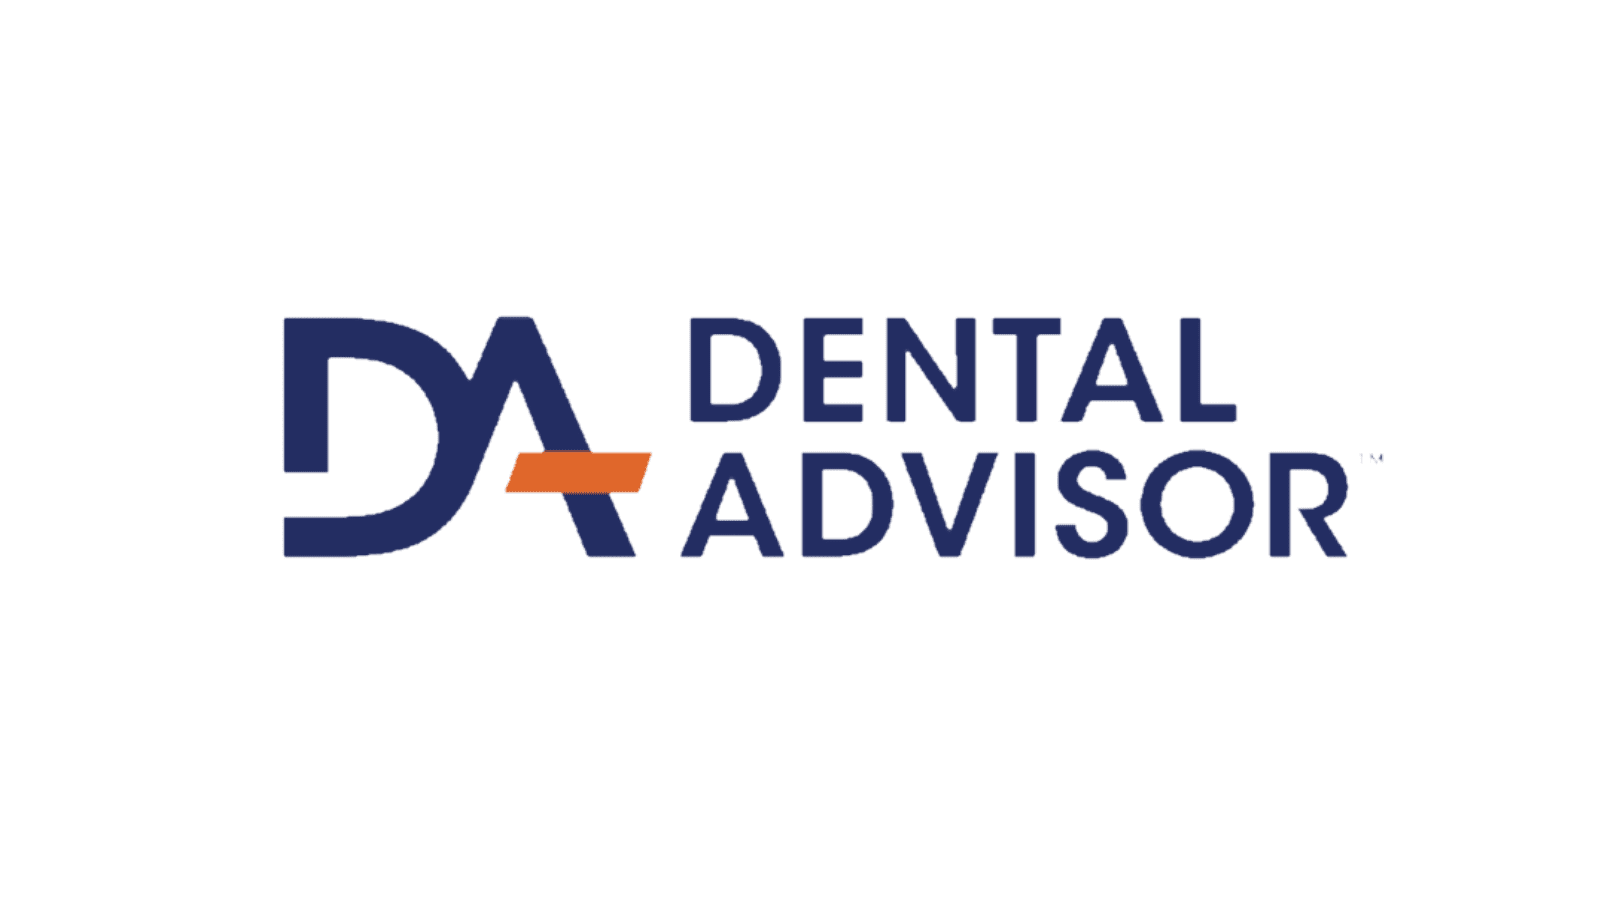 Dental advisor